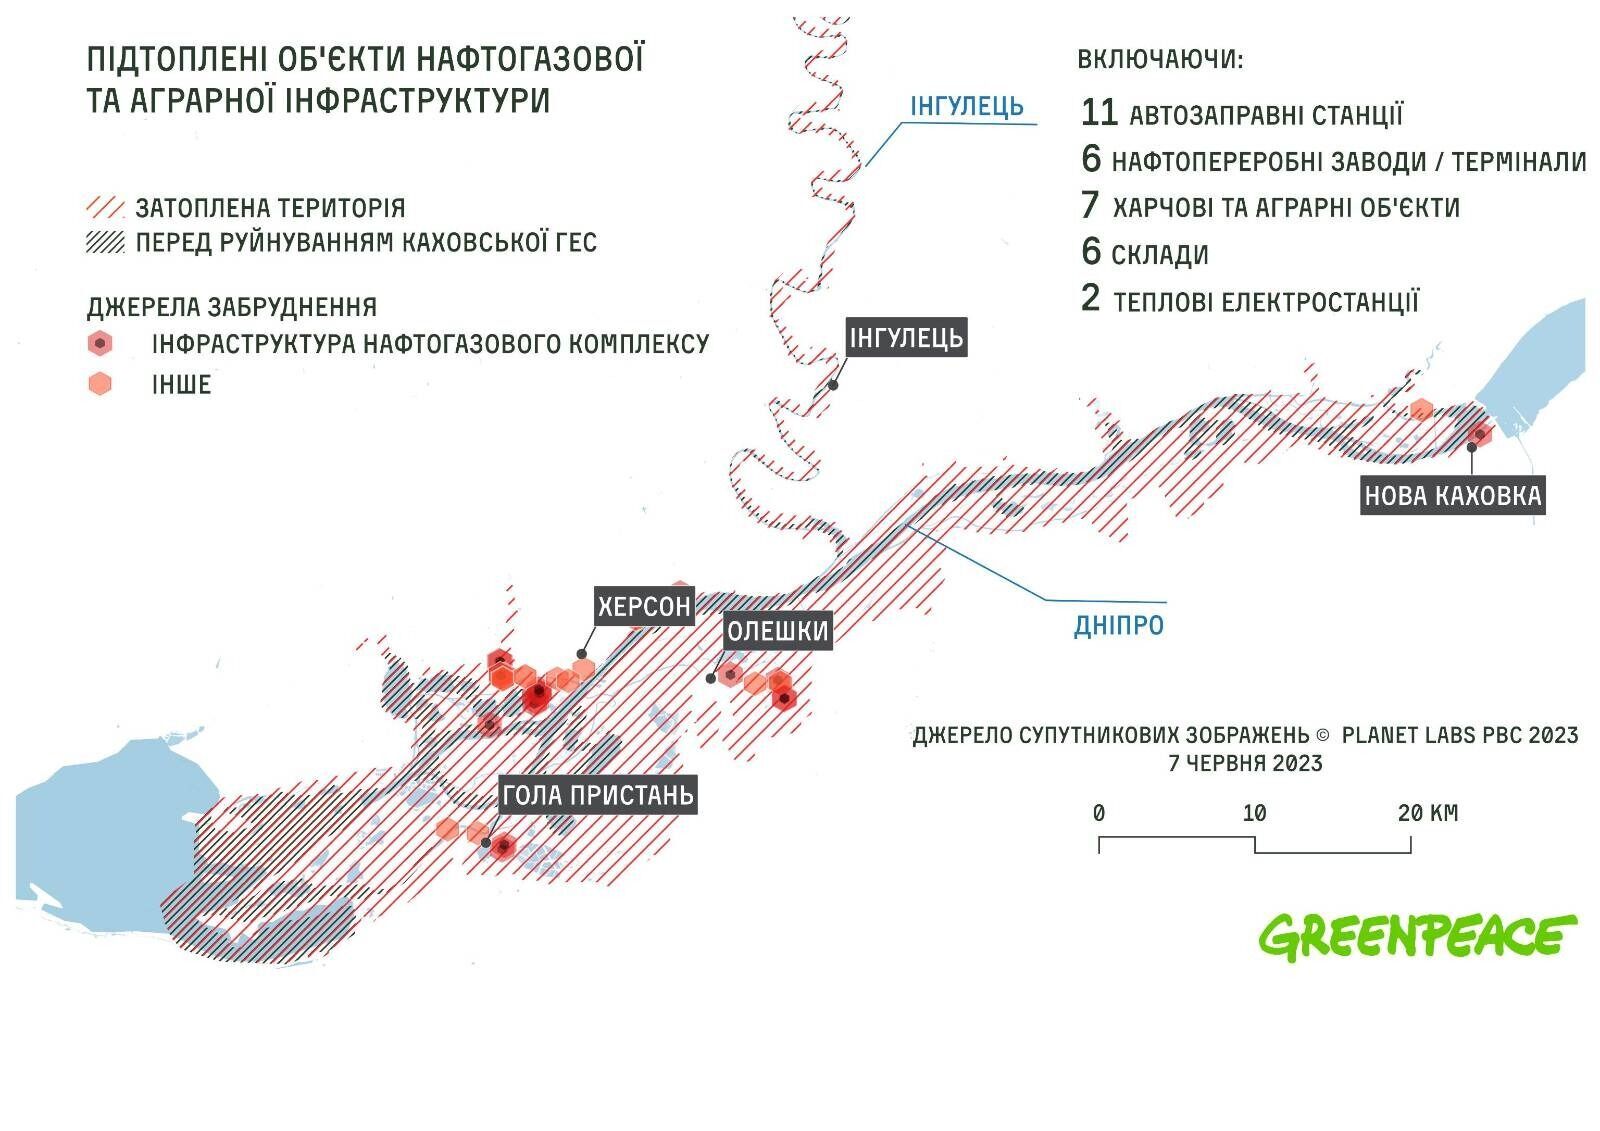 Из-за подрыва Каховской ГЭС затоплены 32 завода, АЗС, теплоэлектростанции и склады – Greenpeace